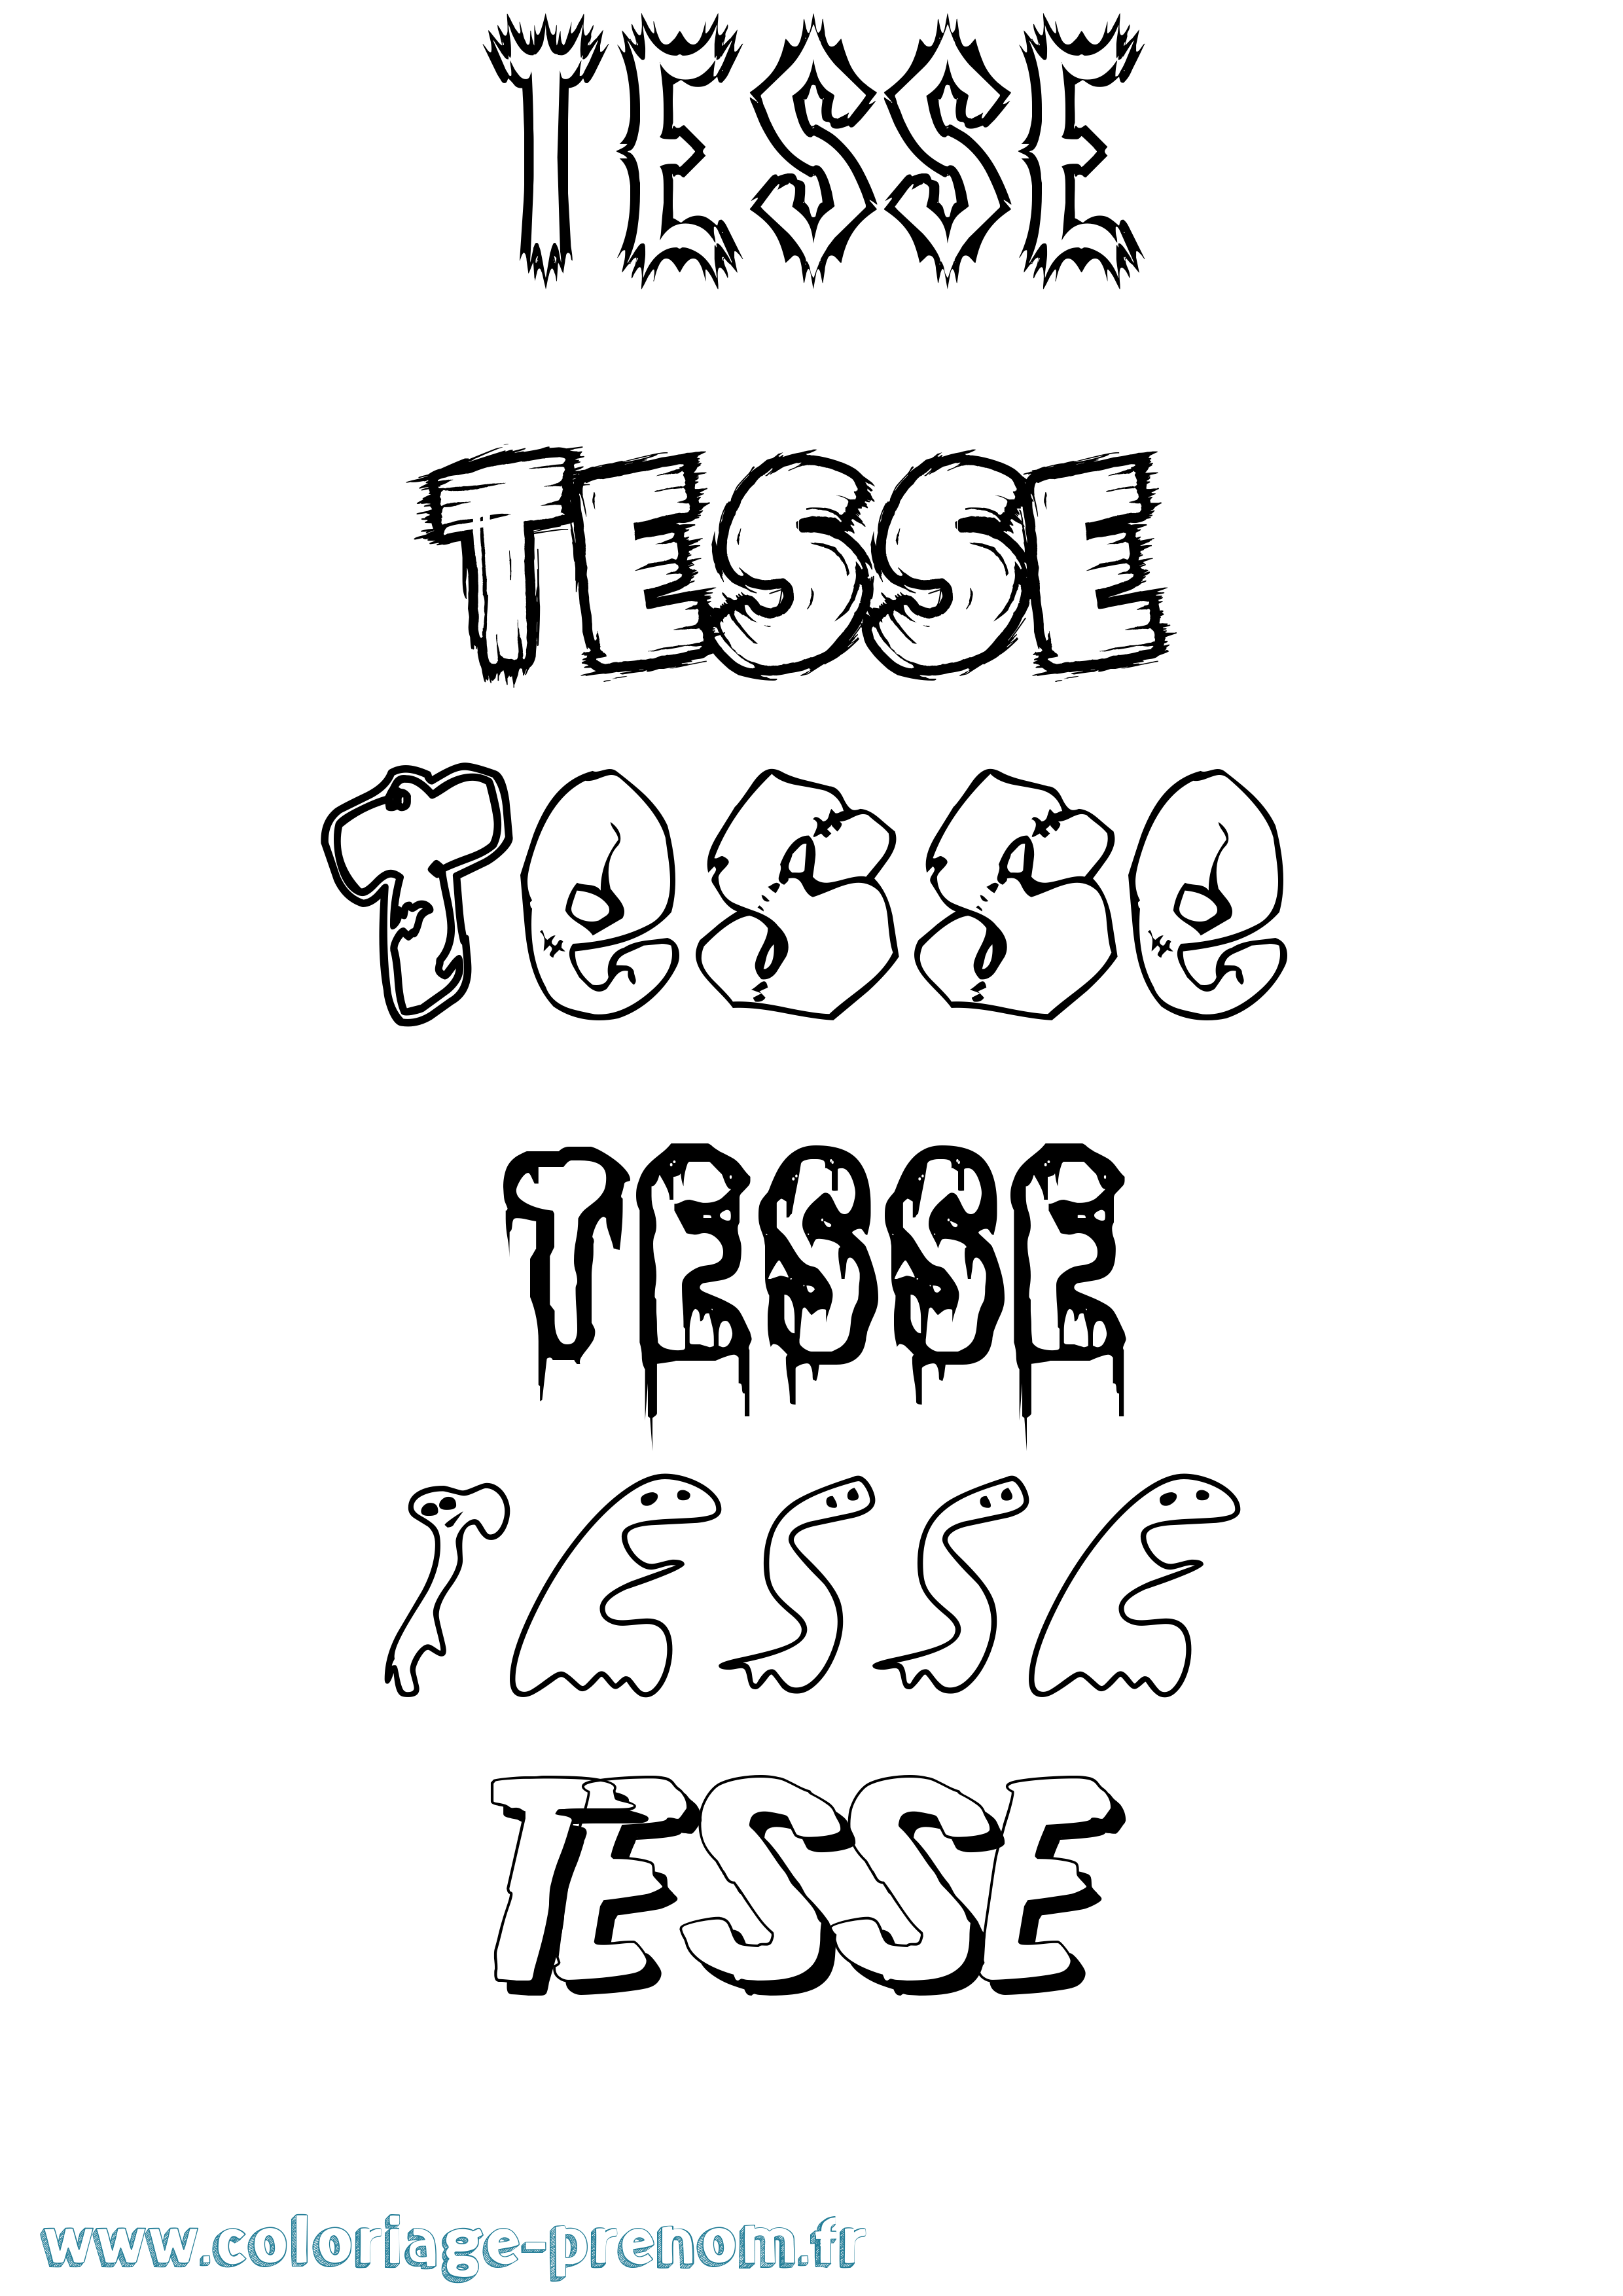 Coloriage prénom Tesse Frisson